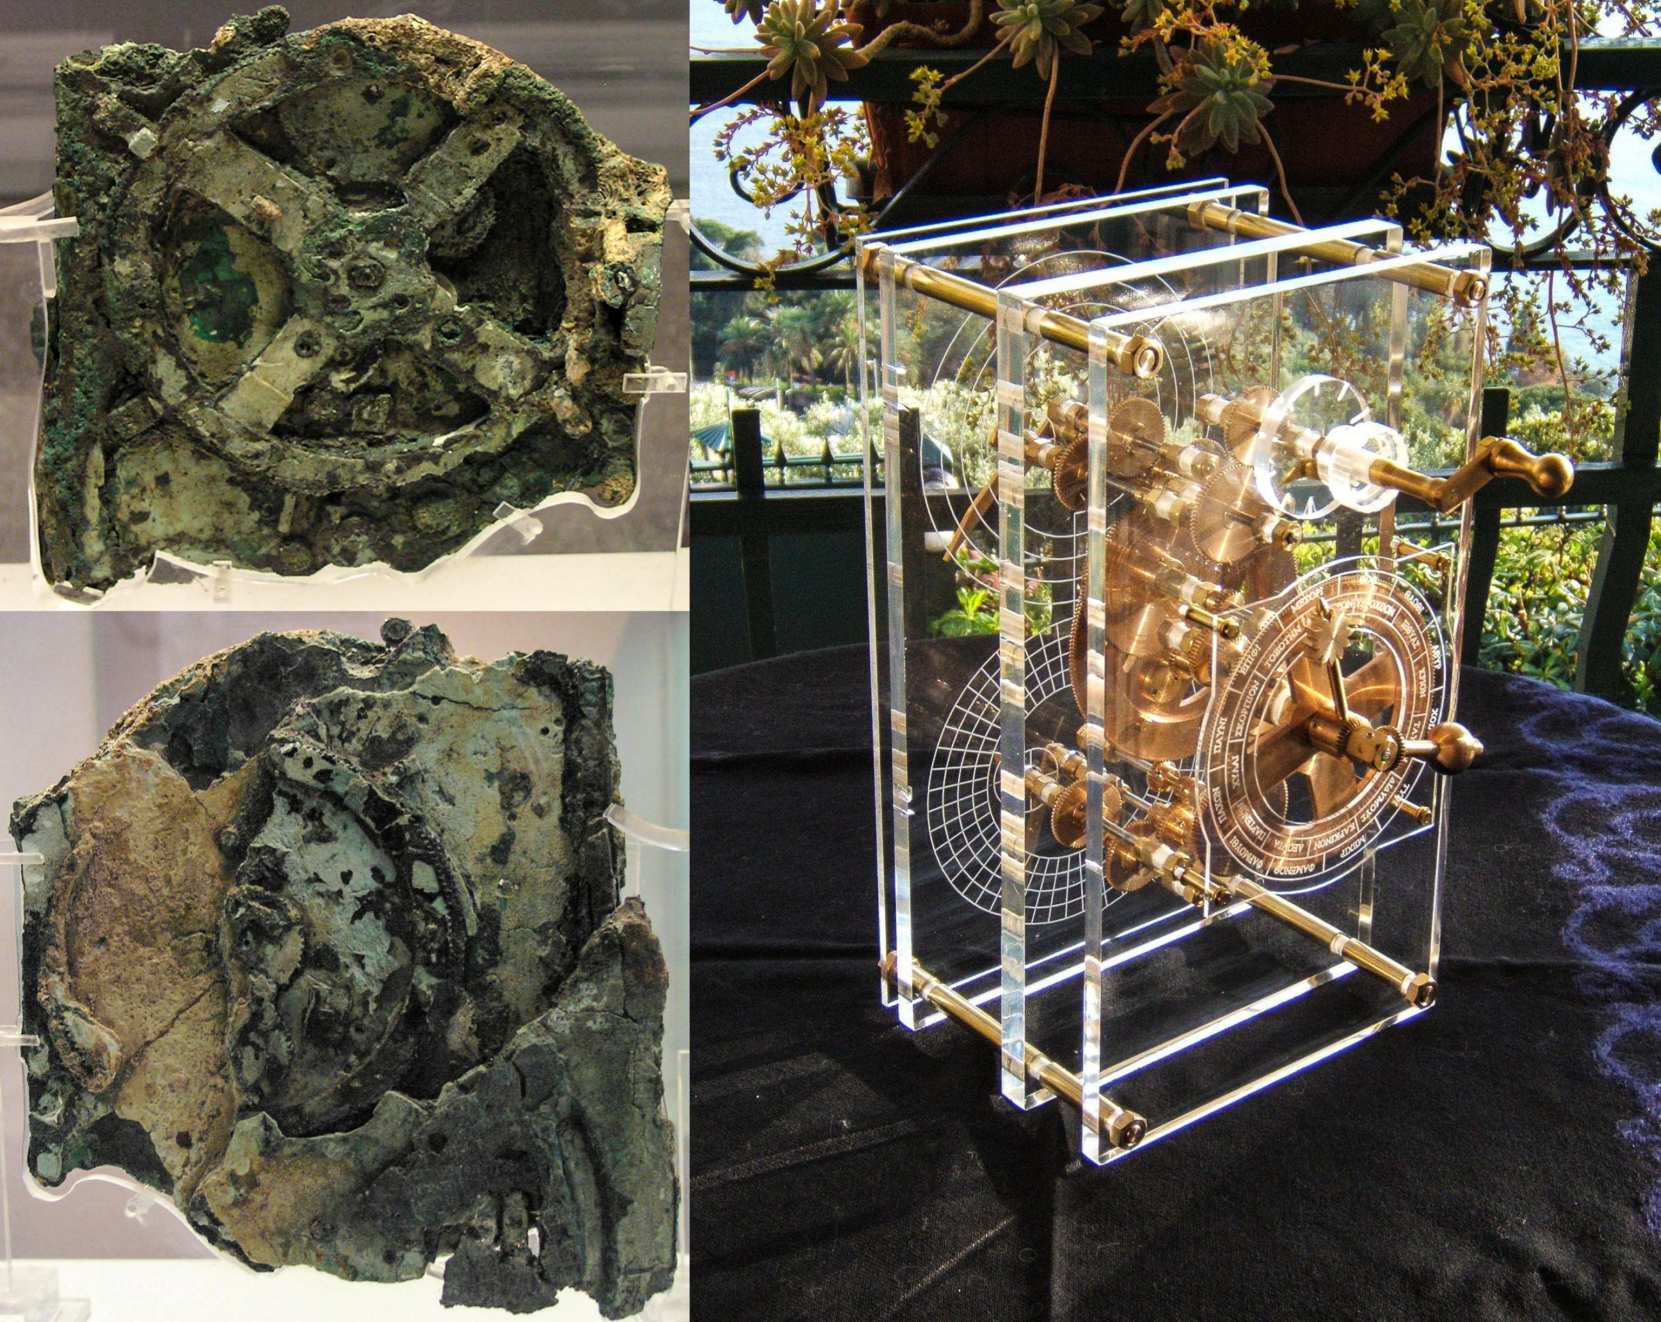 Antikythera 机械装置（在右图中可见重建）由 37 种不同类型的齿轮组成，非常复杂，以至于许多人认为它是第一台人造模拟计算机。 该装置装在一个 340 毫米 × 180 毫米 × 90 毫米的木箱中，是一个复杂的发条机构，由至少 30 个啮合的青铜齿轮组成。 它的遗骸被发现为 82 个独立的碎片，其中只有 140 个包含任何齿轮或重要的铭文。 最大的齿轮（在左上角的图像中清晰可见）直径约为 223 毫米，最初有 XNUMX 个齿。